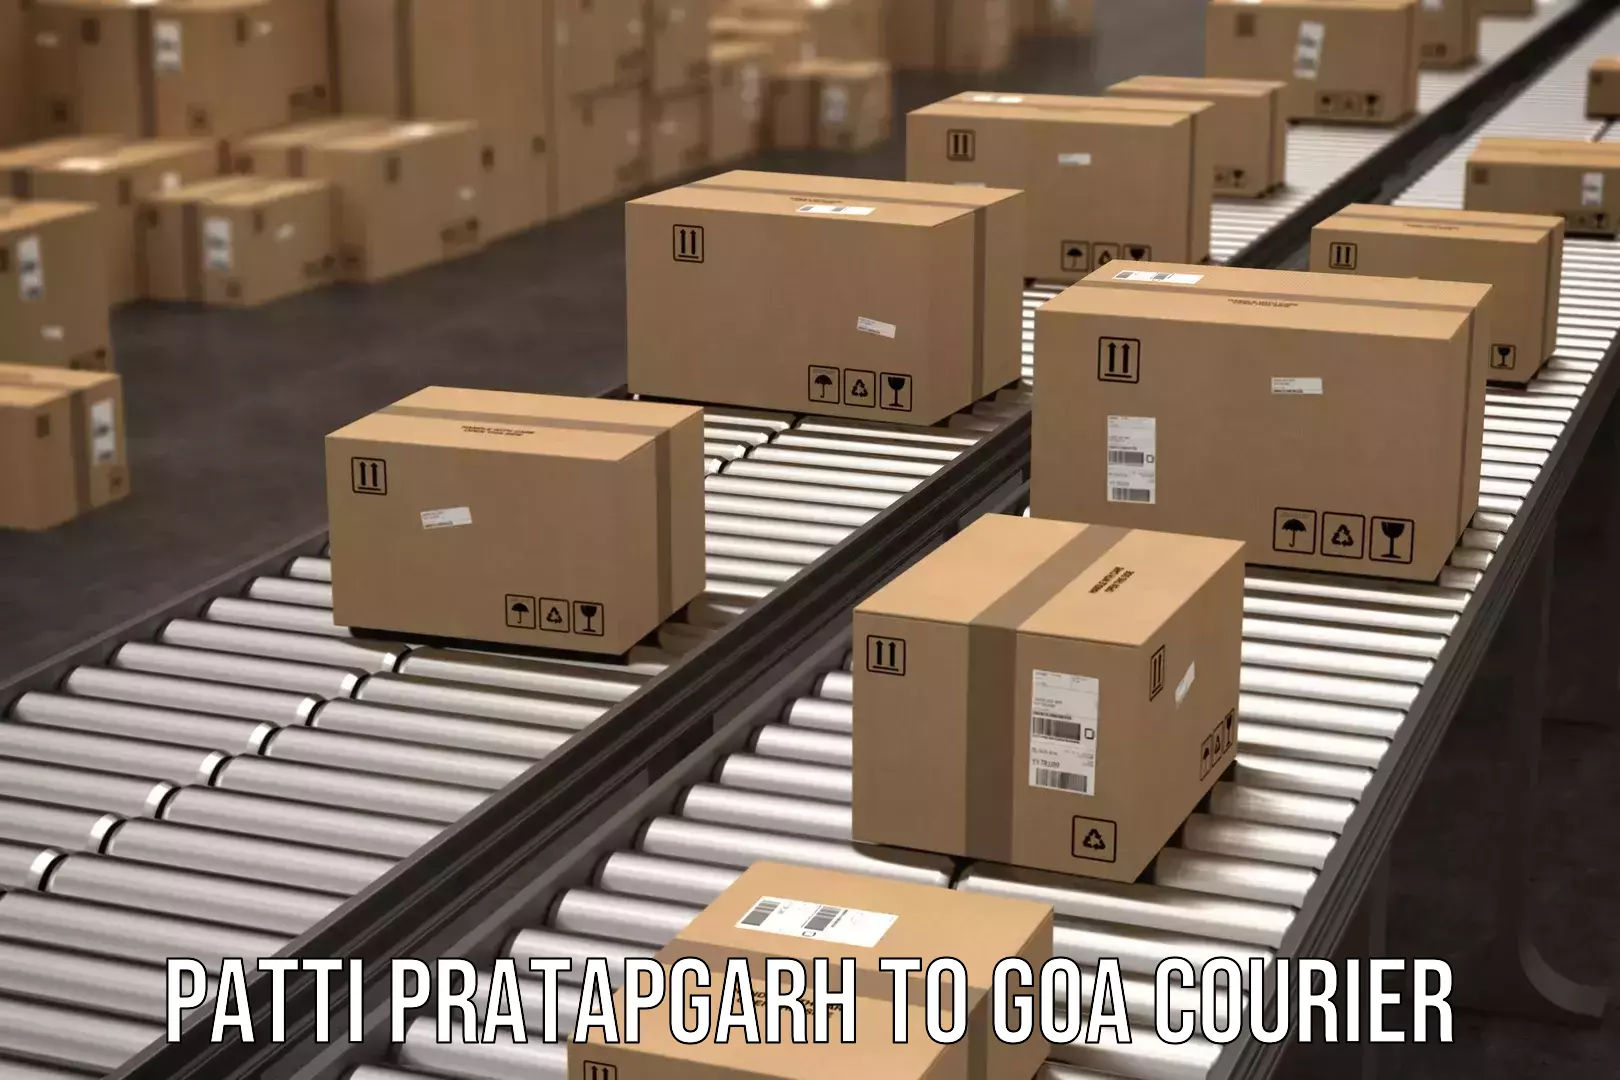 Advanced courier platforms Patti Pratapgarh to NIT Goa